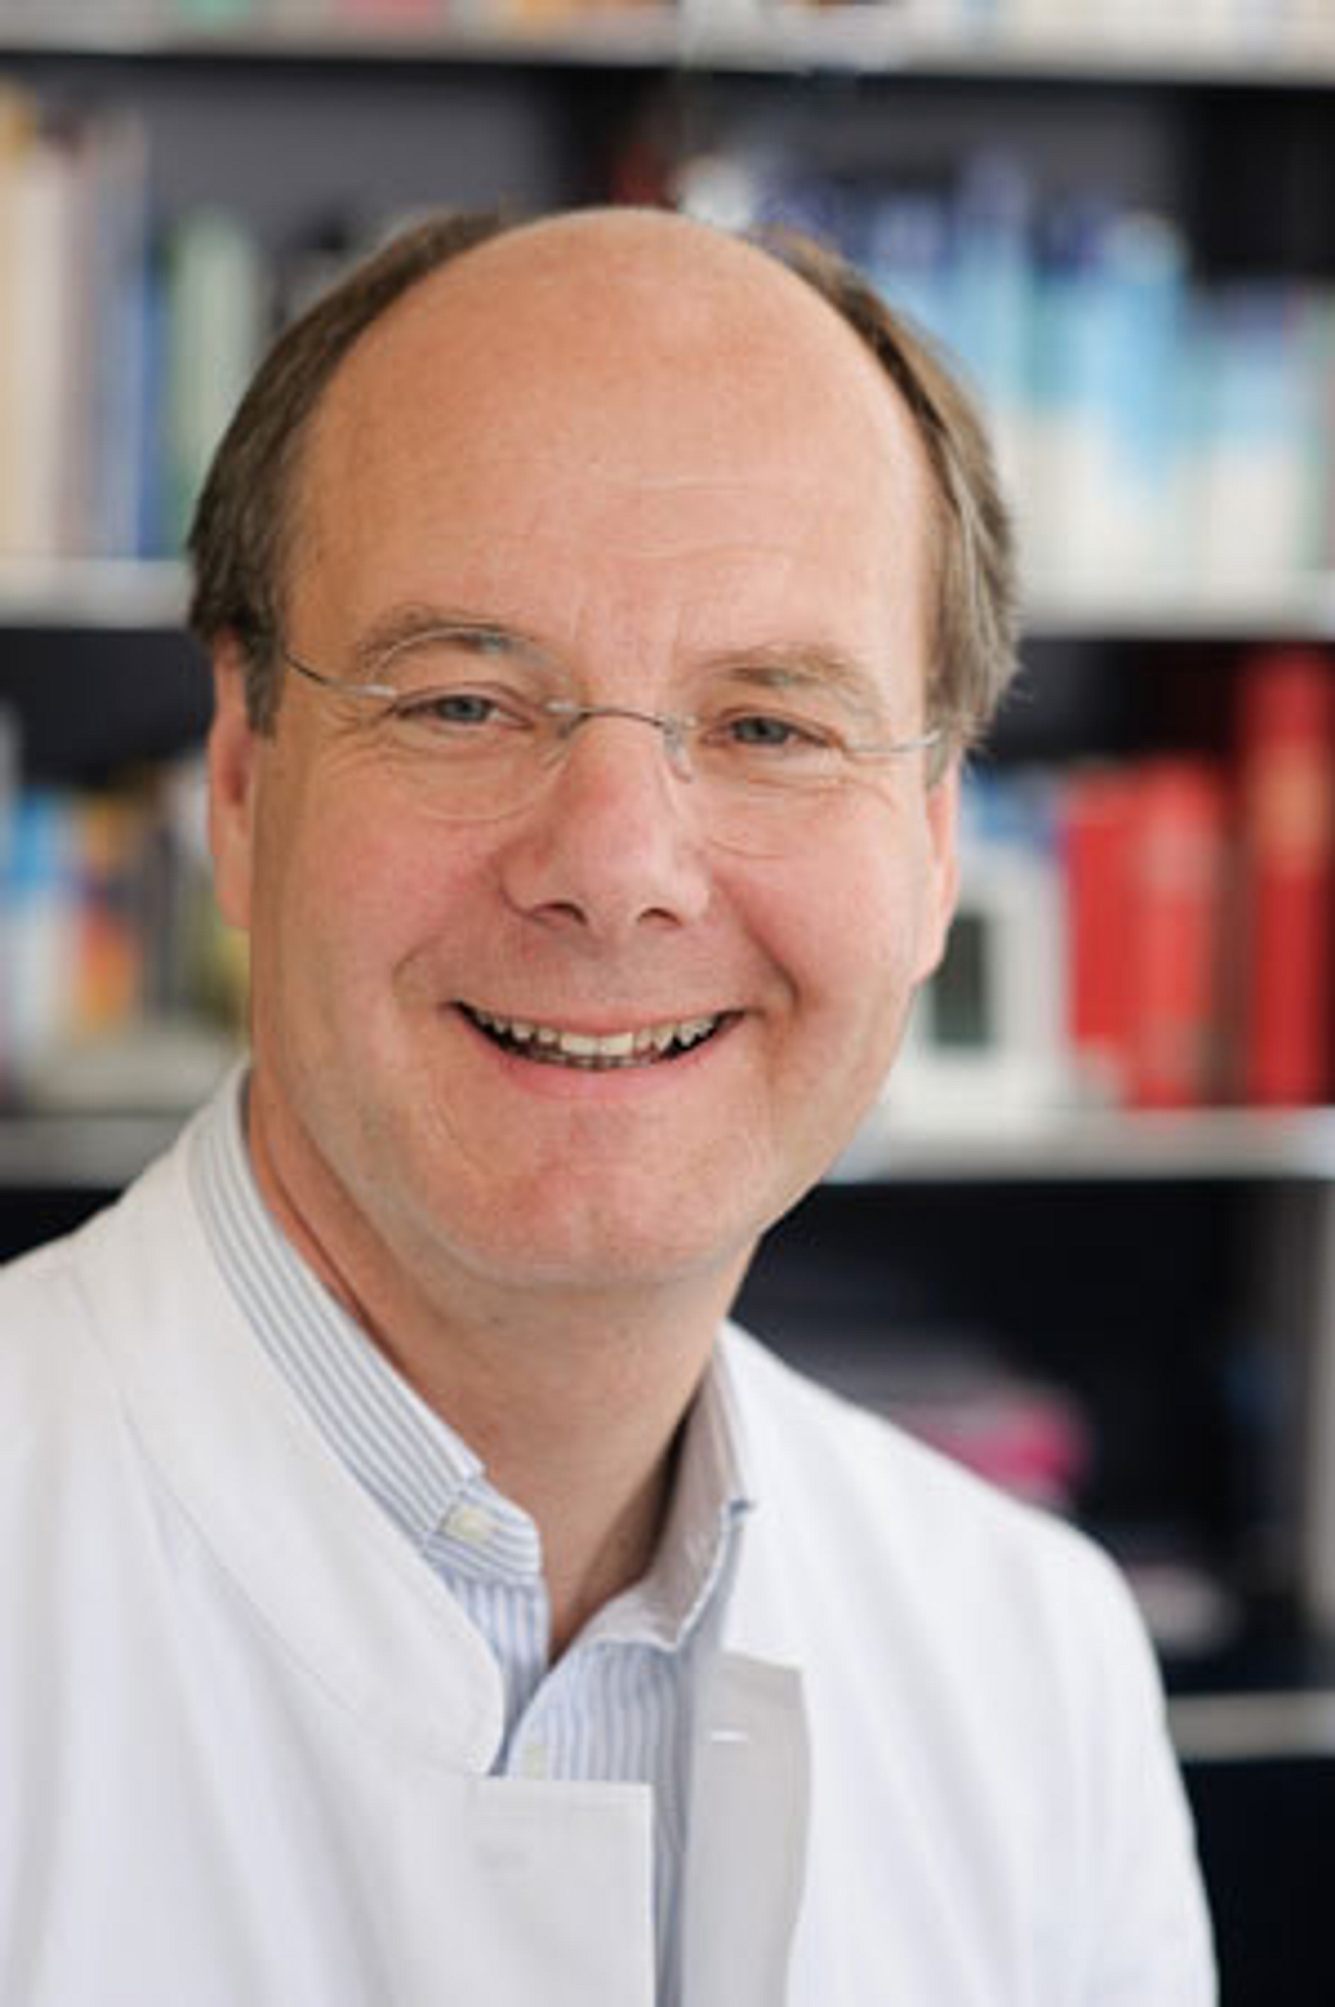 Neurologe Dr. Hans-Georg Bredow im Interview zu Demenz und Alzheimer